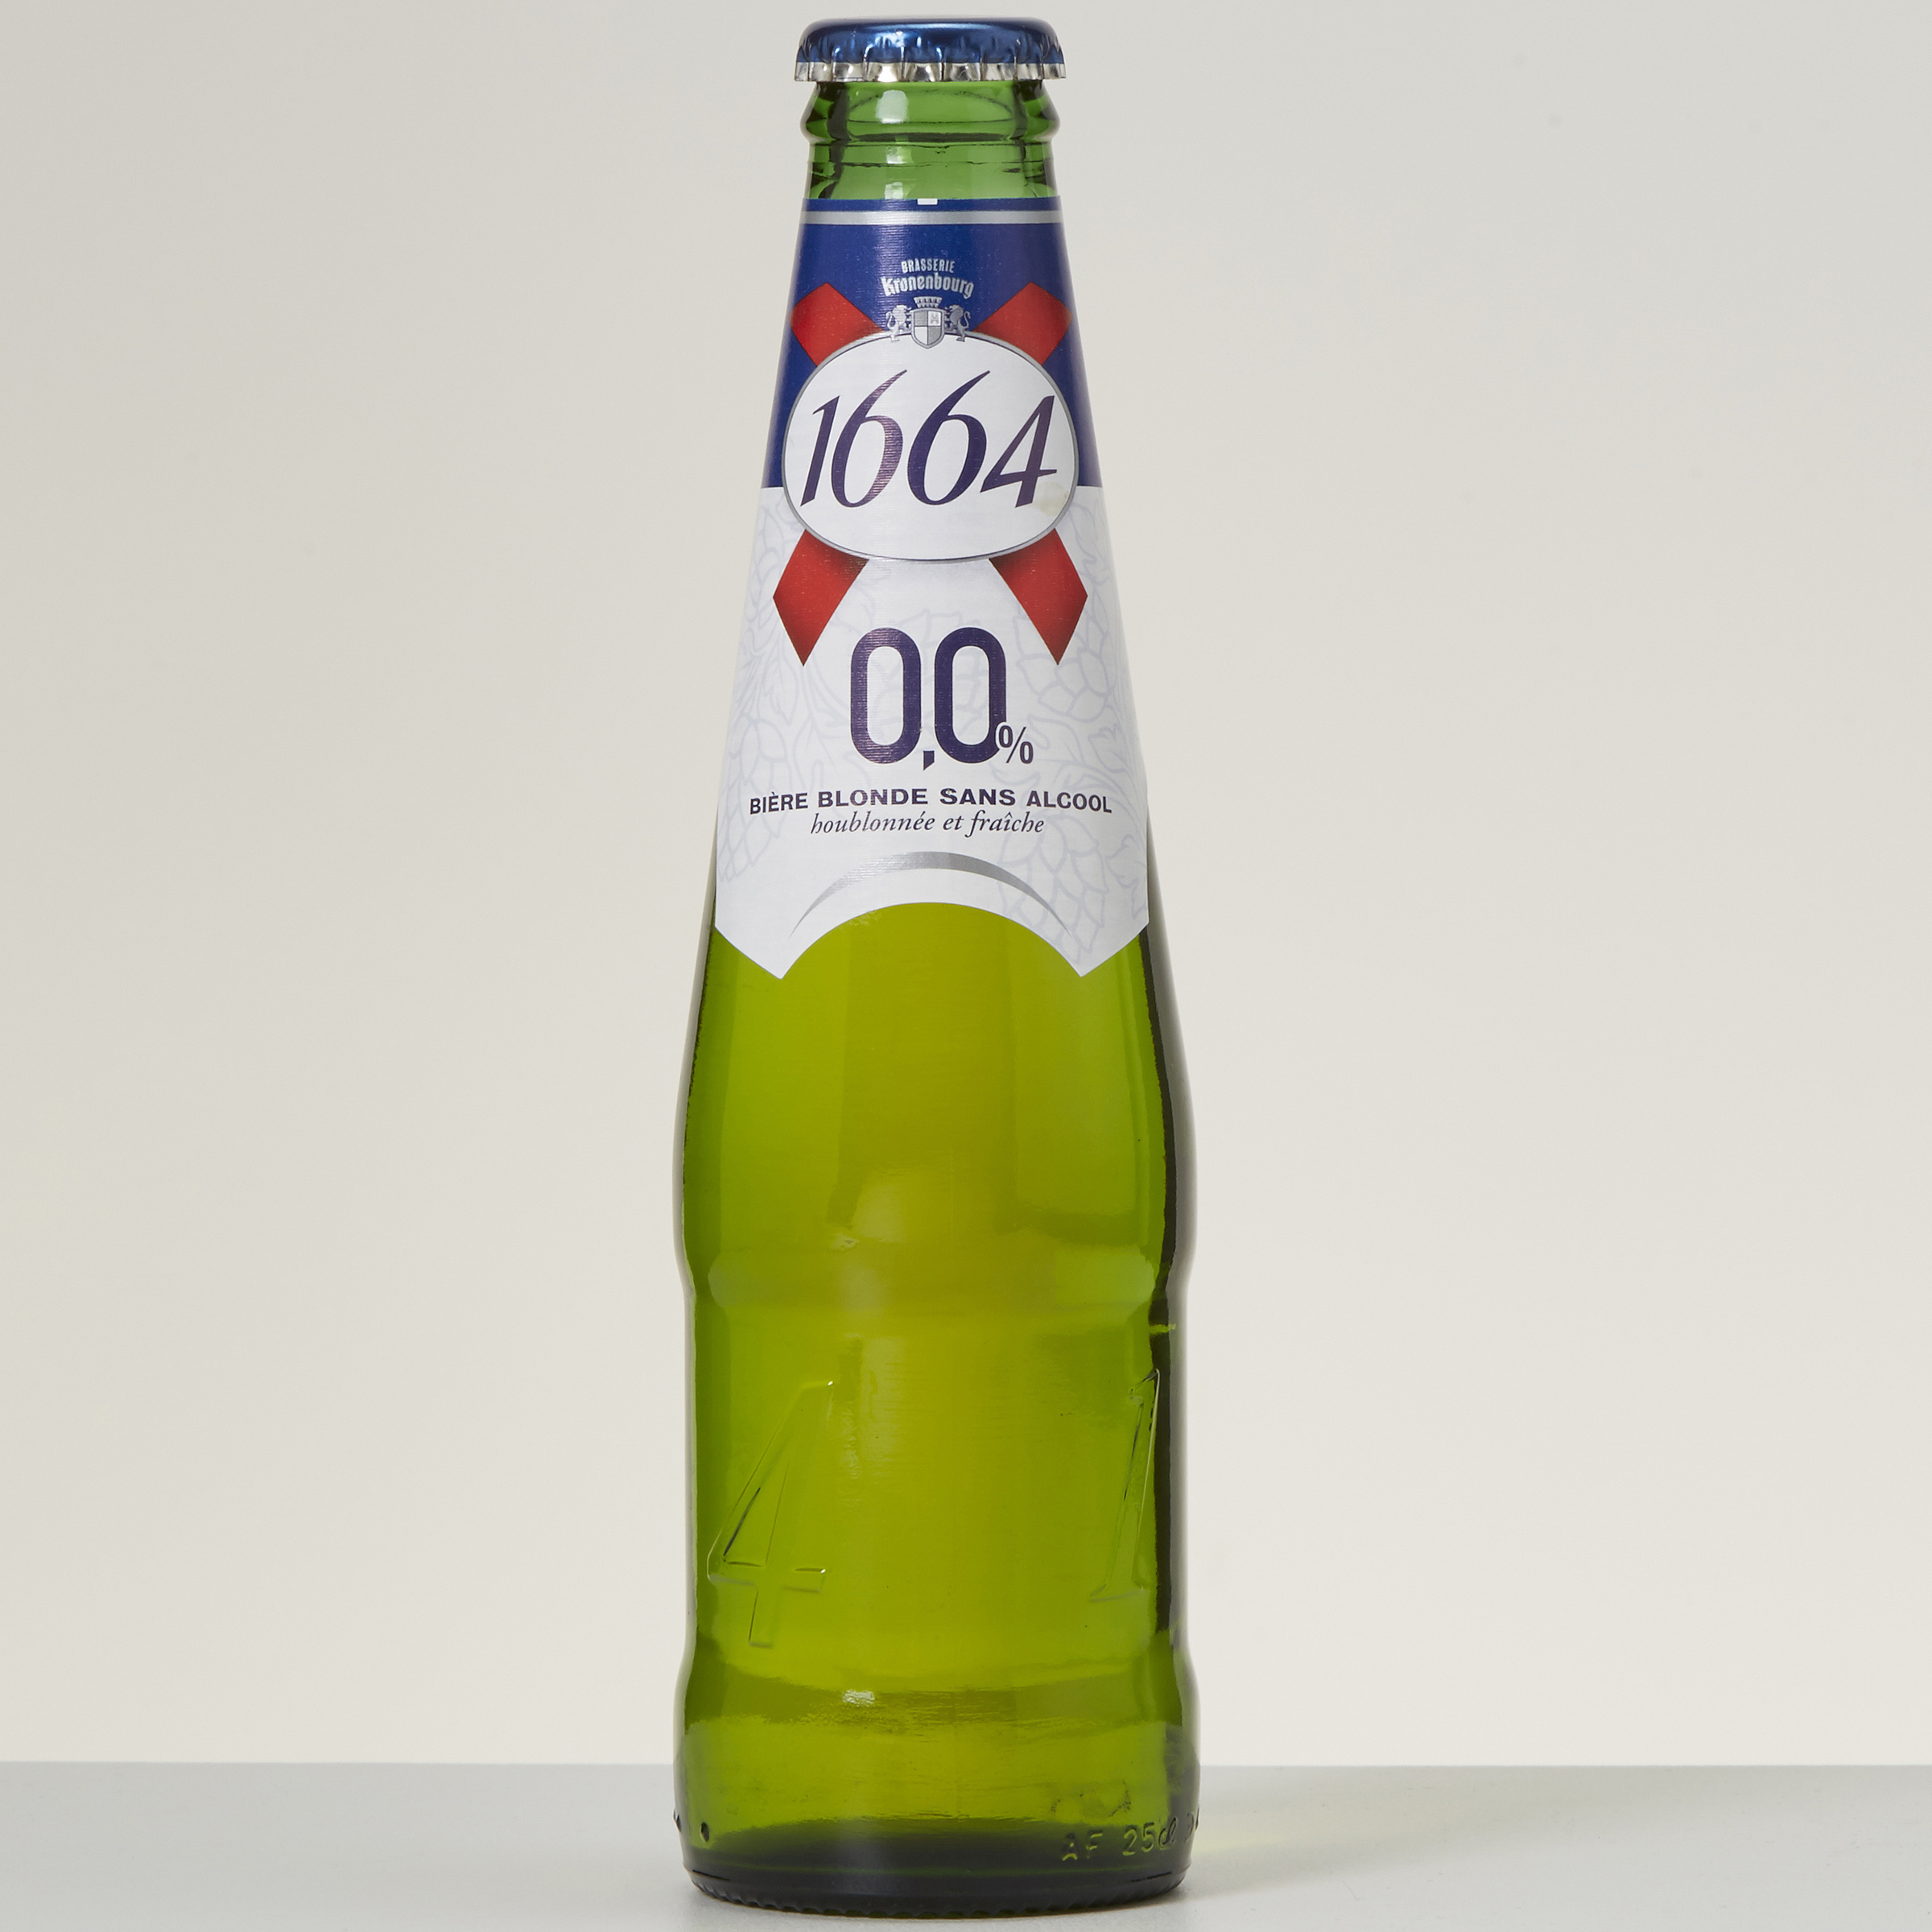 1664 Bière blonde sans alcool 0,0 %